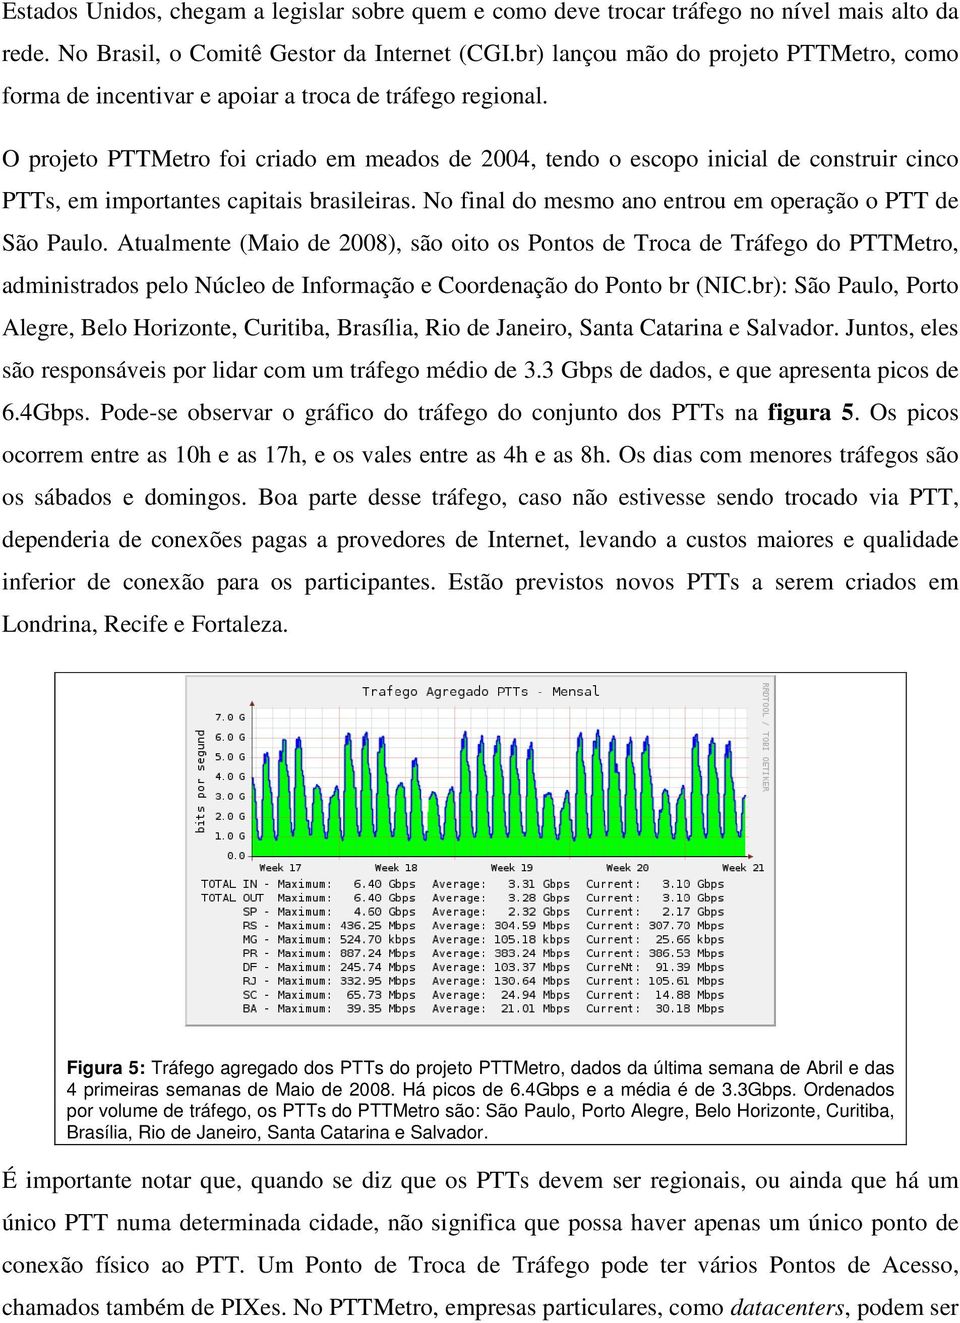 O projeto PTTMetro foi criado em meados de 2004, tendo o escopo inicial de construir cinco PTTs, em importantes capitais brasileiras. No final do mesmo ano entrou em operação o PTT de São Paulo.